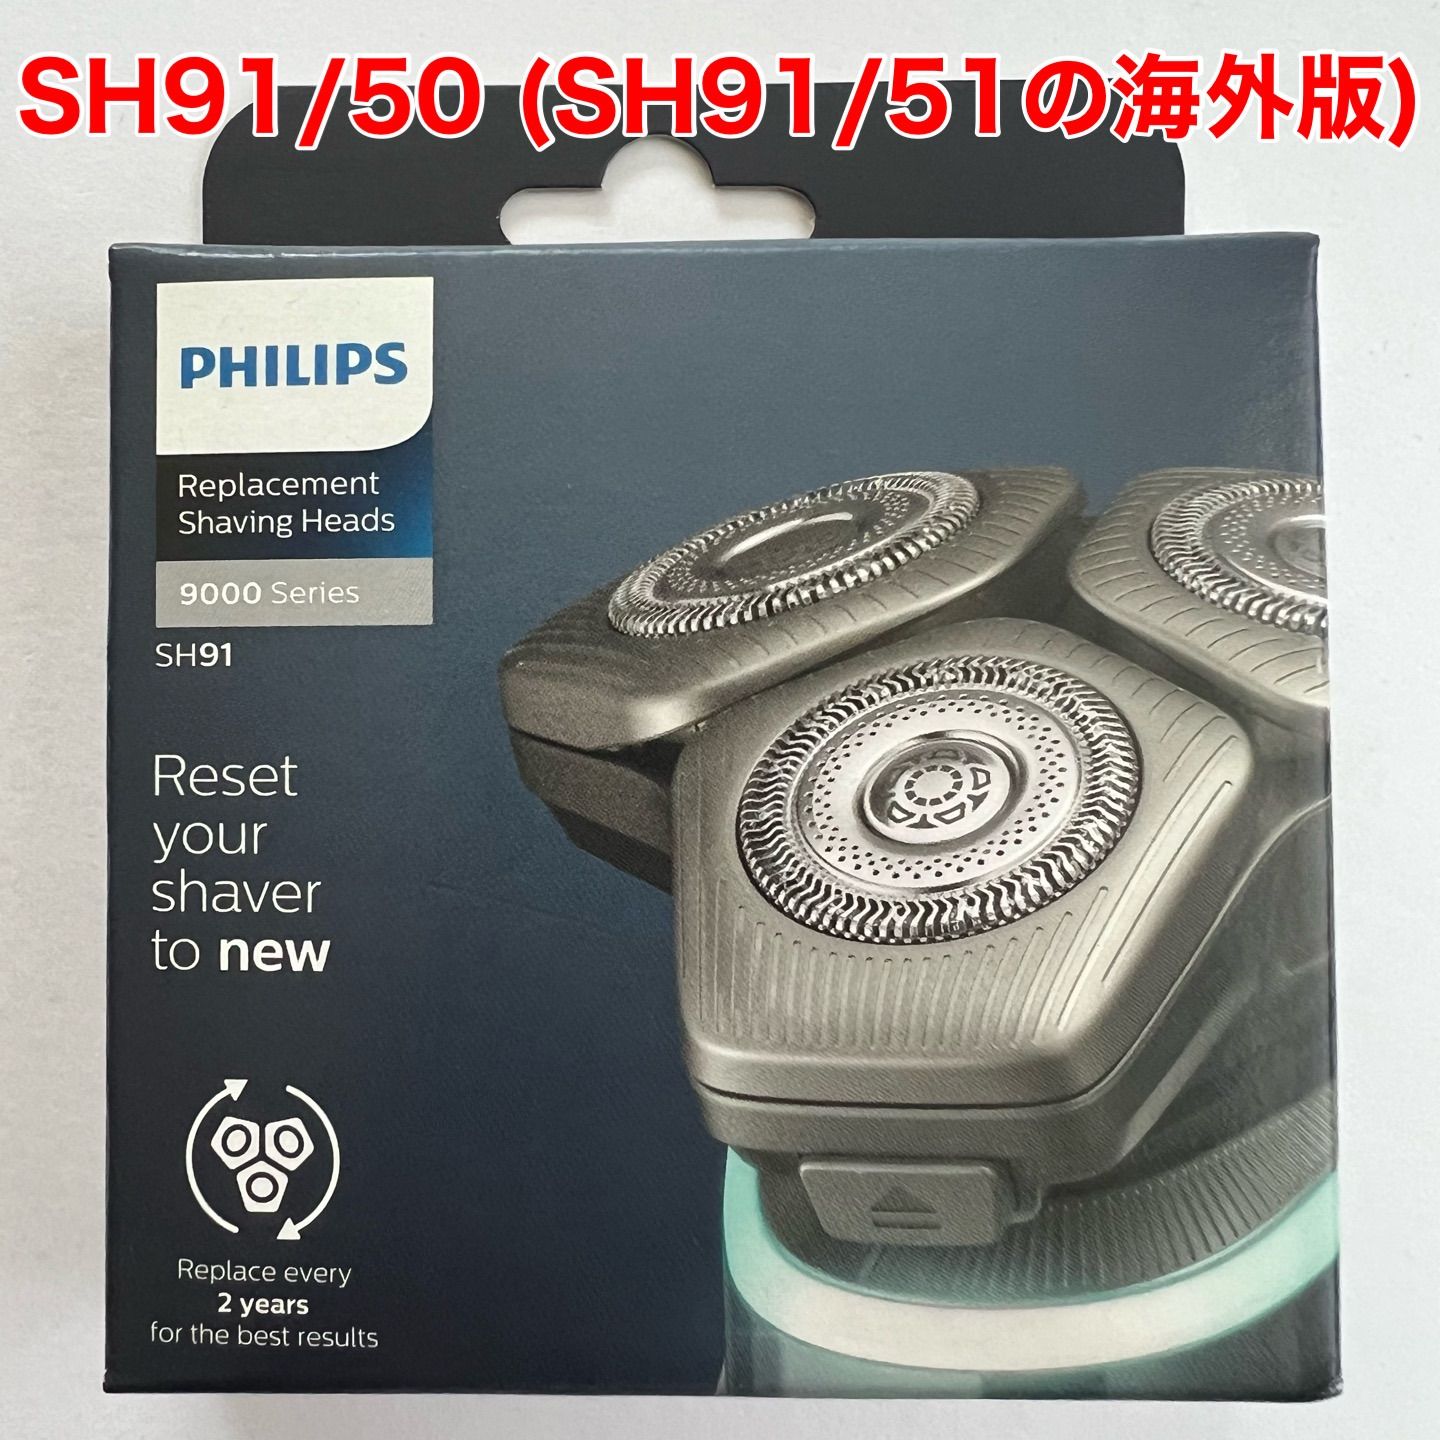 Philips (フィリップス) 純正 SH91/50 (SH91/51の海外版) 電動